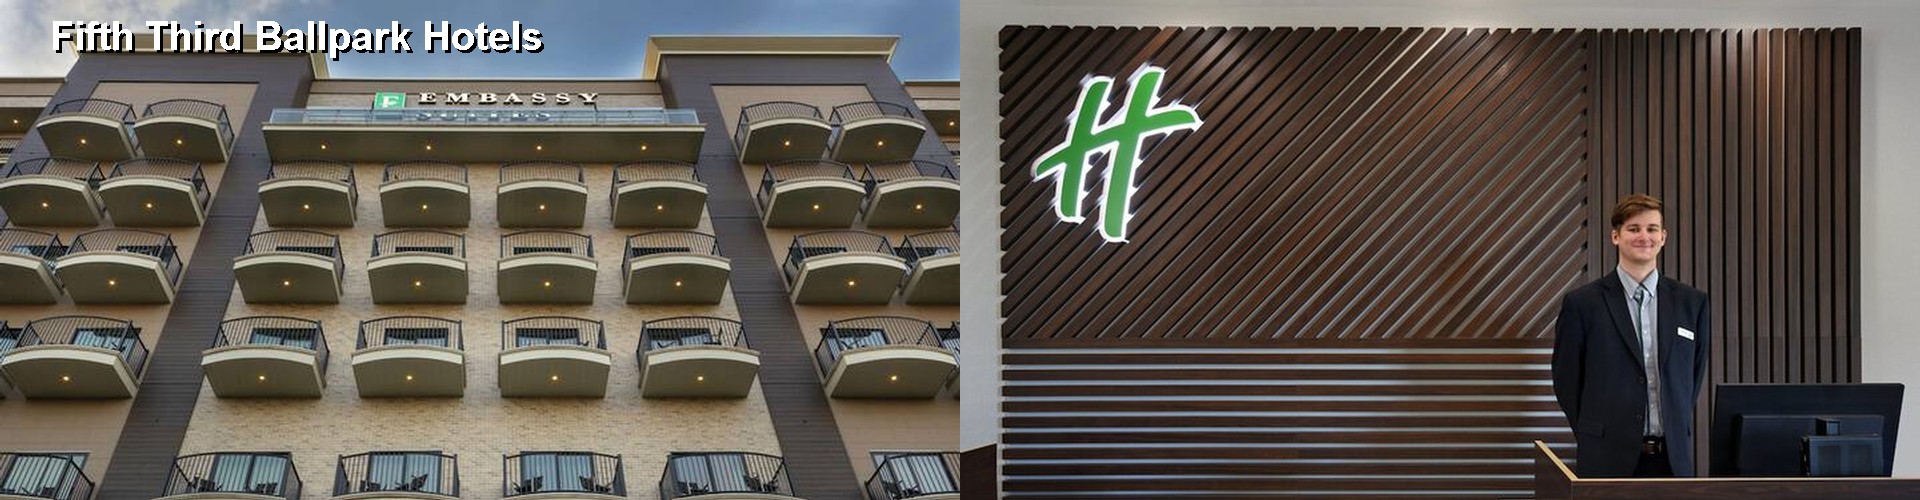 5 Best Hotels near Fifth Third Ballpark